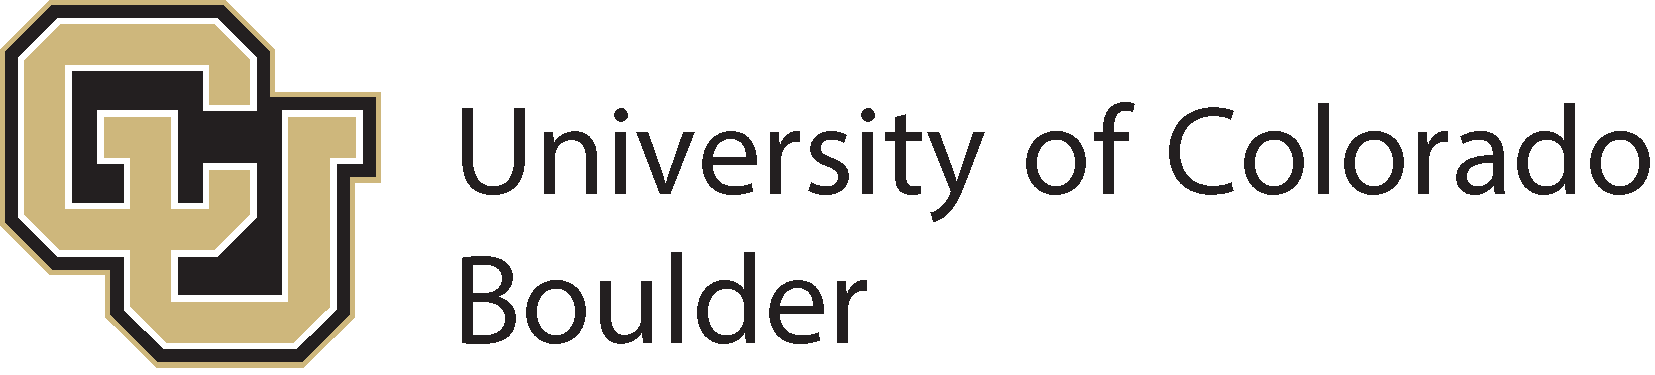 Colorado ülikooli Boulderi logo (CU Boulder) – SVG, PNG, AI, EPS ...